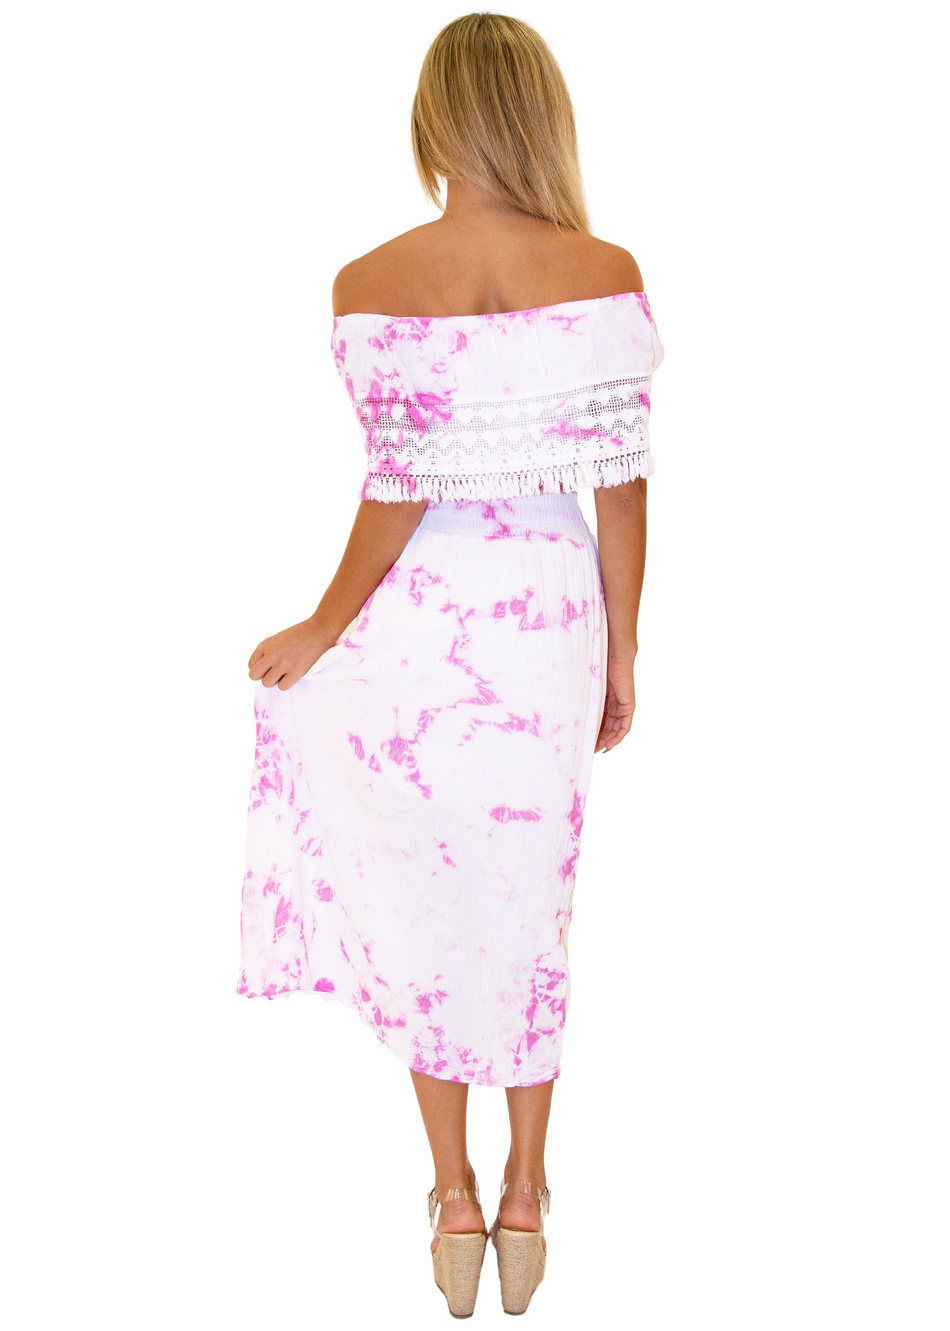 NW1079 - Tie-Dye Pink Cotton Dress